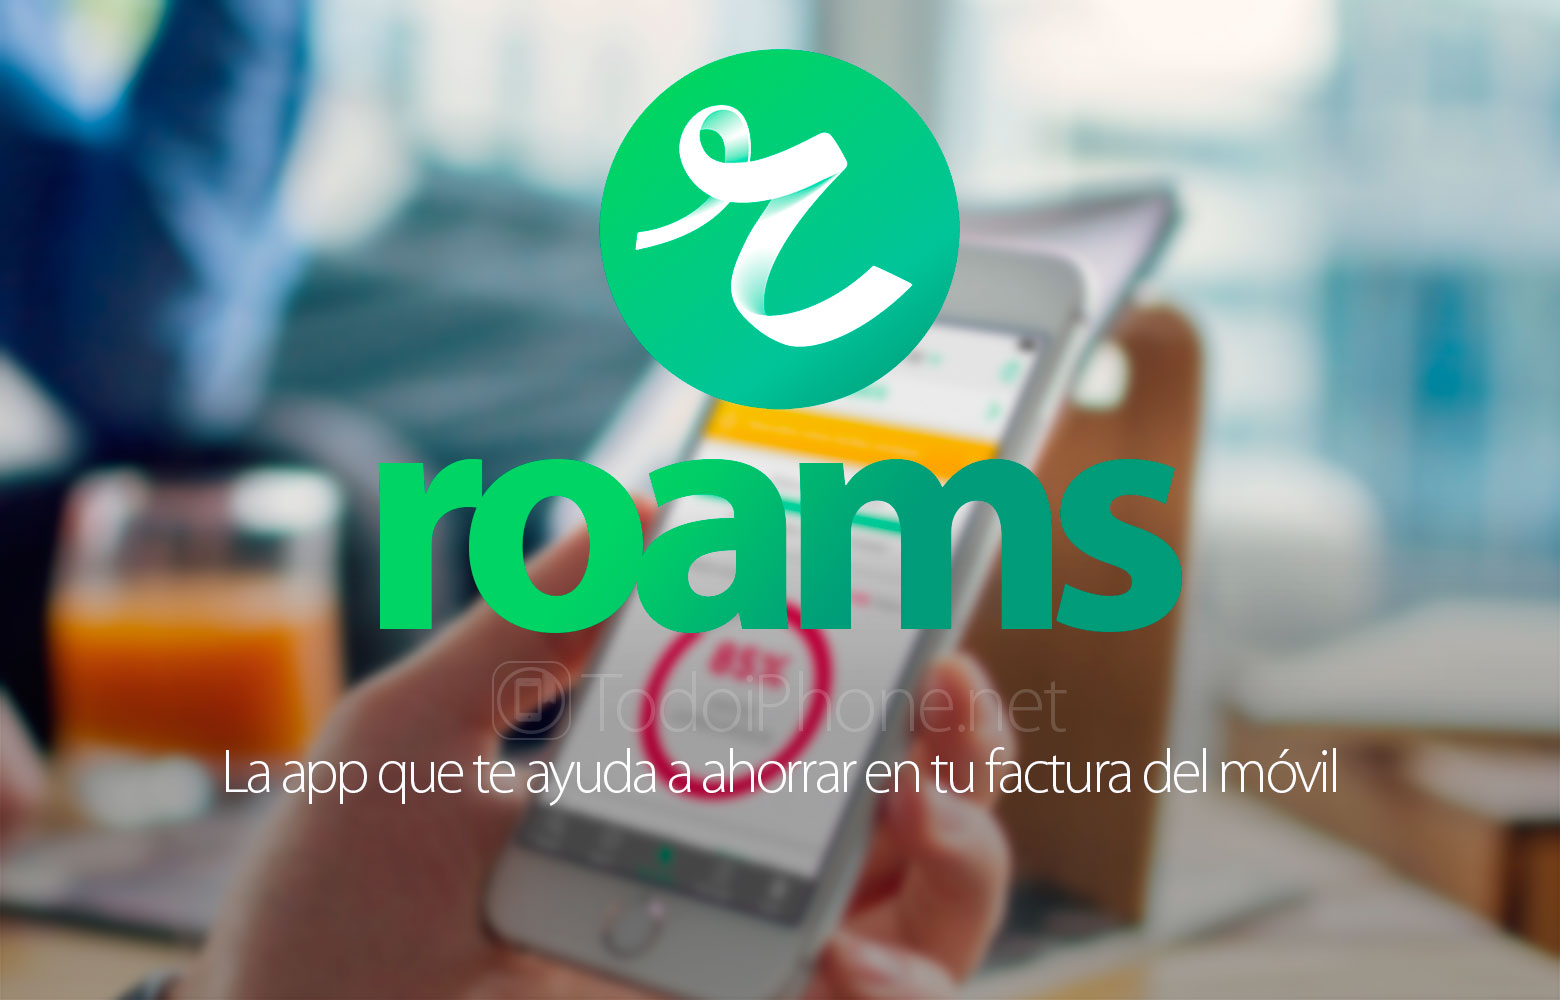 roams-app-ahorrar-factura-movil